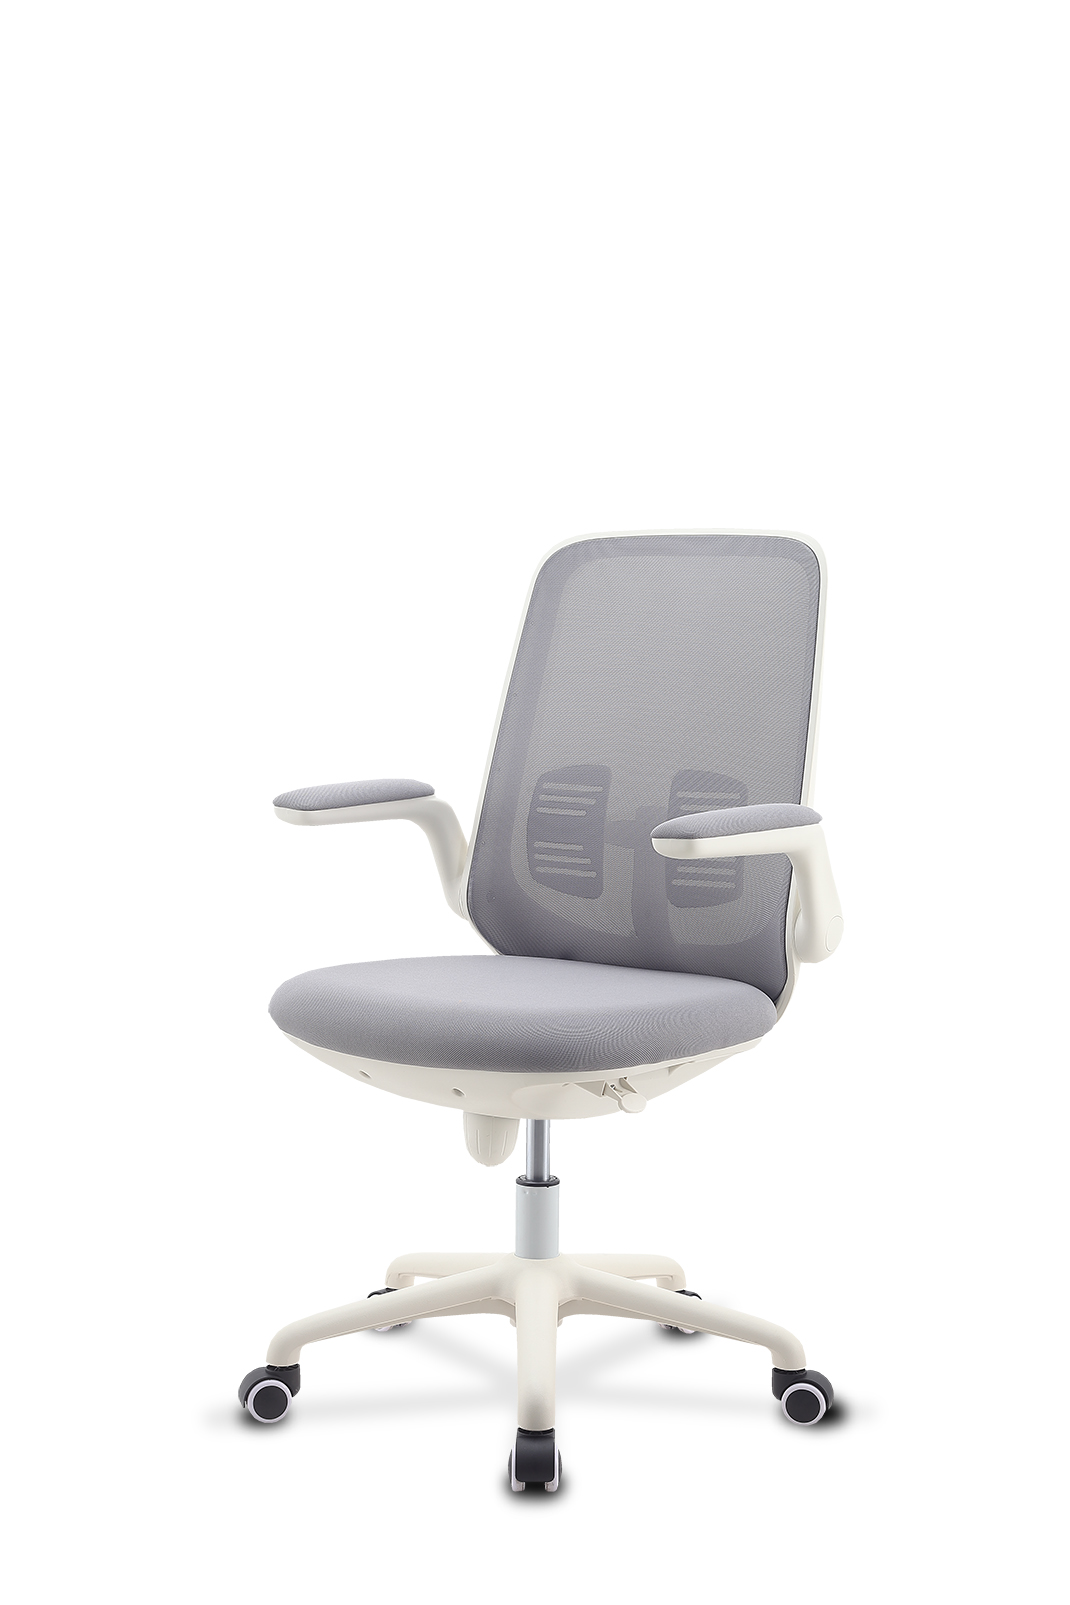 电脑椅 办公椅 学生椅  MS7006 白胶款 扶手可收纳